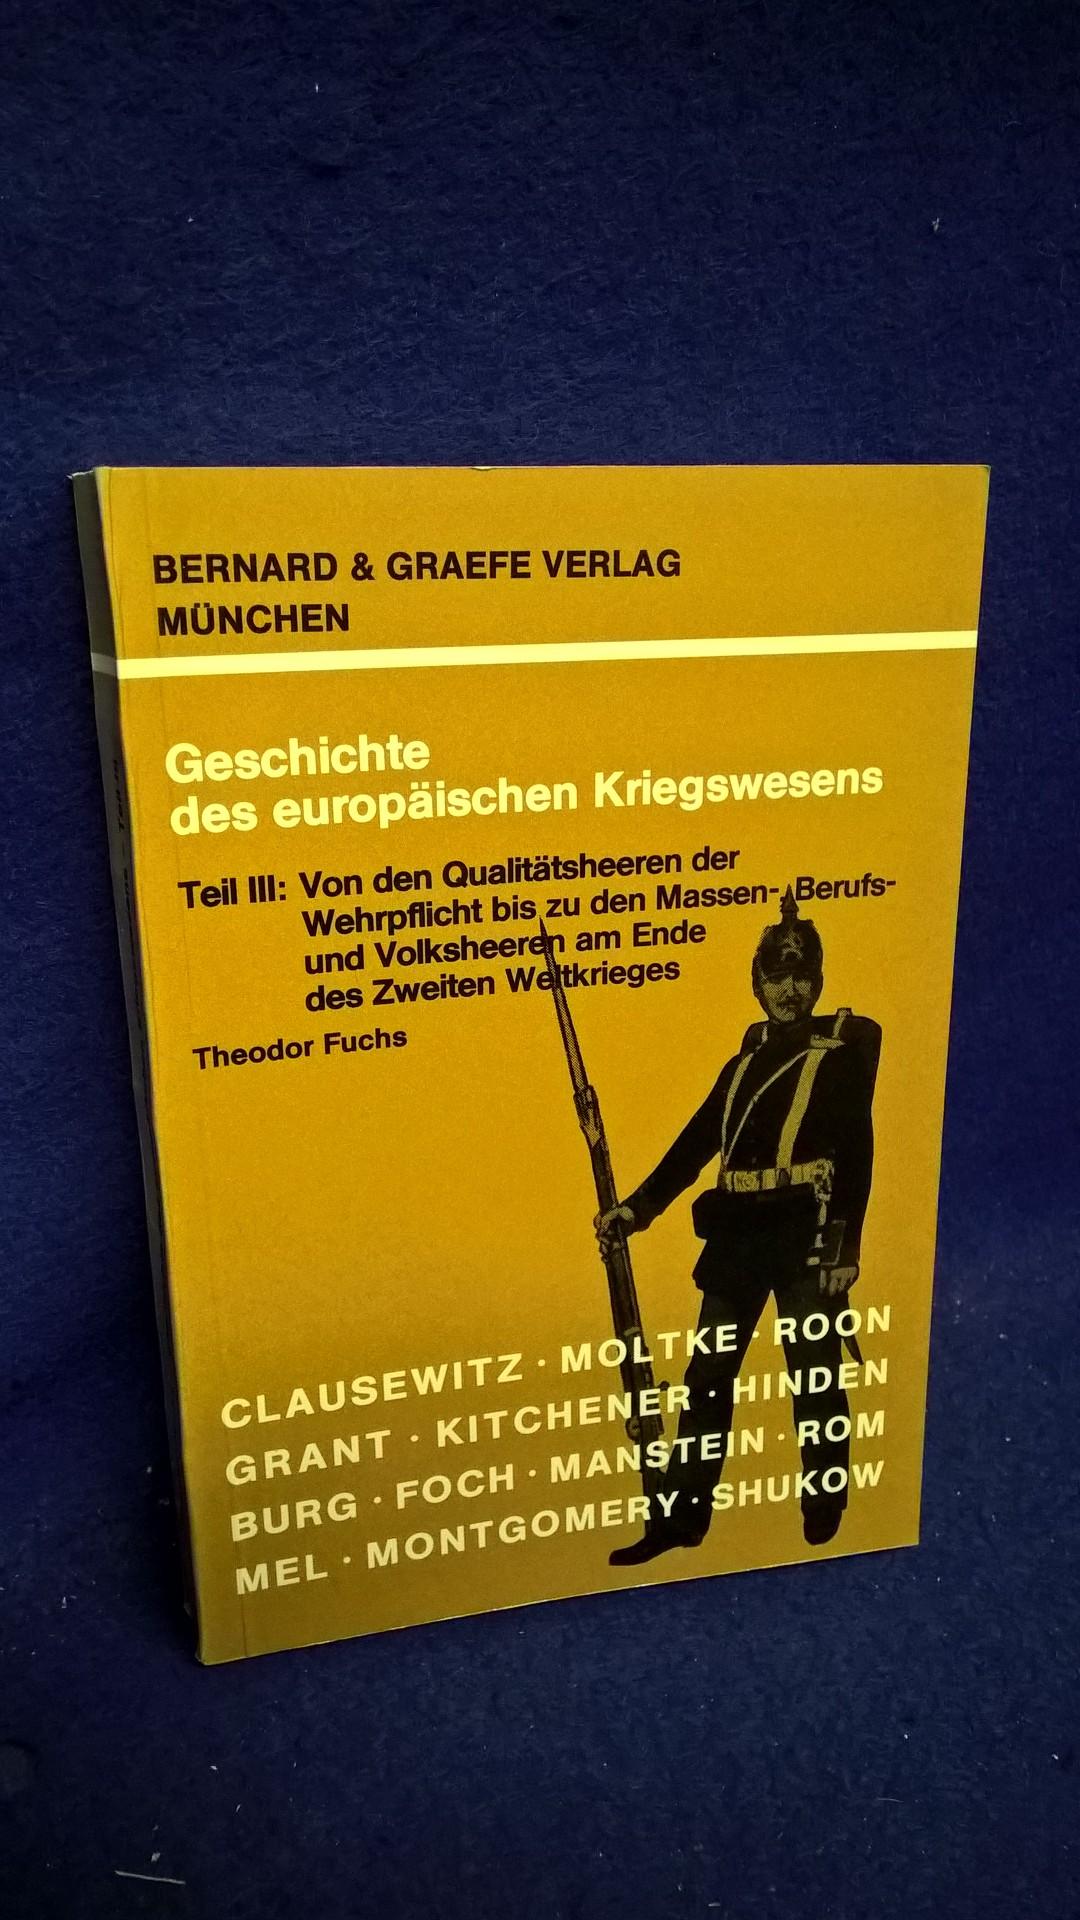 Geschichte des europäischen Kriegswesens - Teil III: Von den Qualitätsherren der Wehrpflicht bis zu den Massen-, Berufs- und Volksheeren am Ende des 2. Weltkrieges.